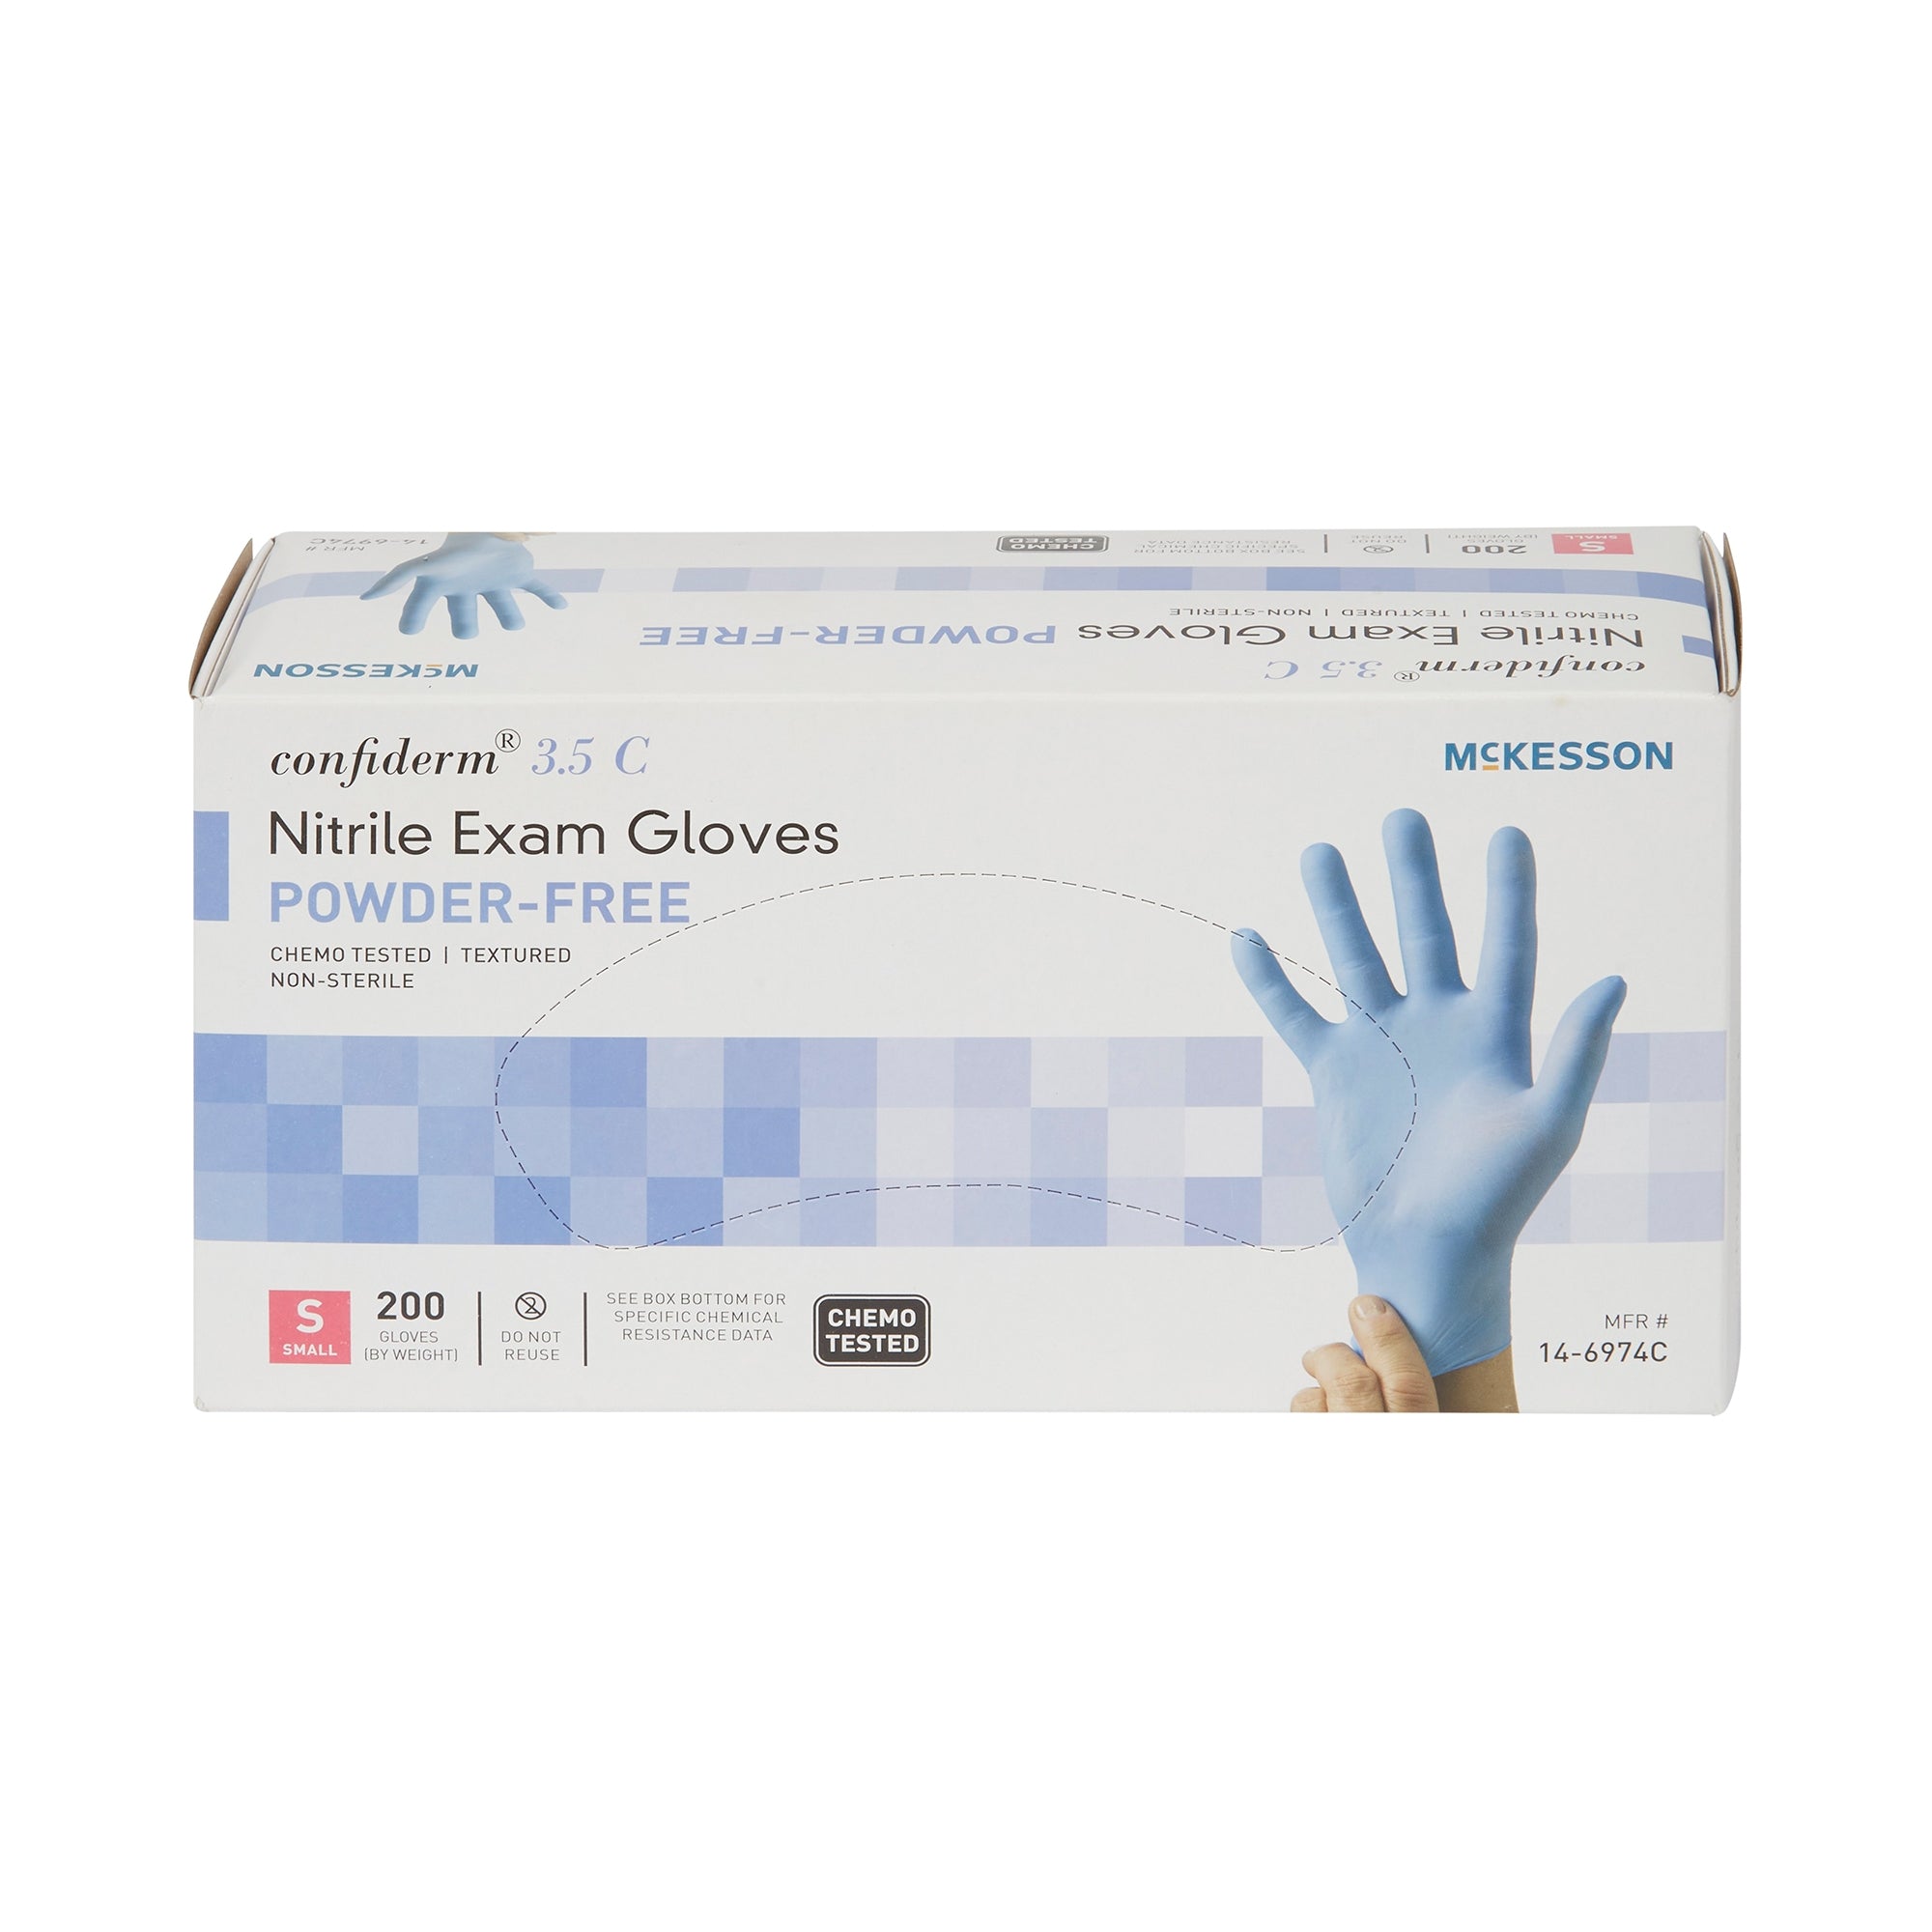 McKesson Confiderm 3.5C Nitrile Gloves, Small, Blue - 200 Pack
po